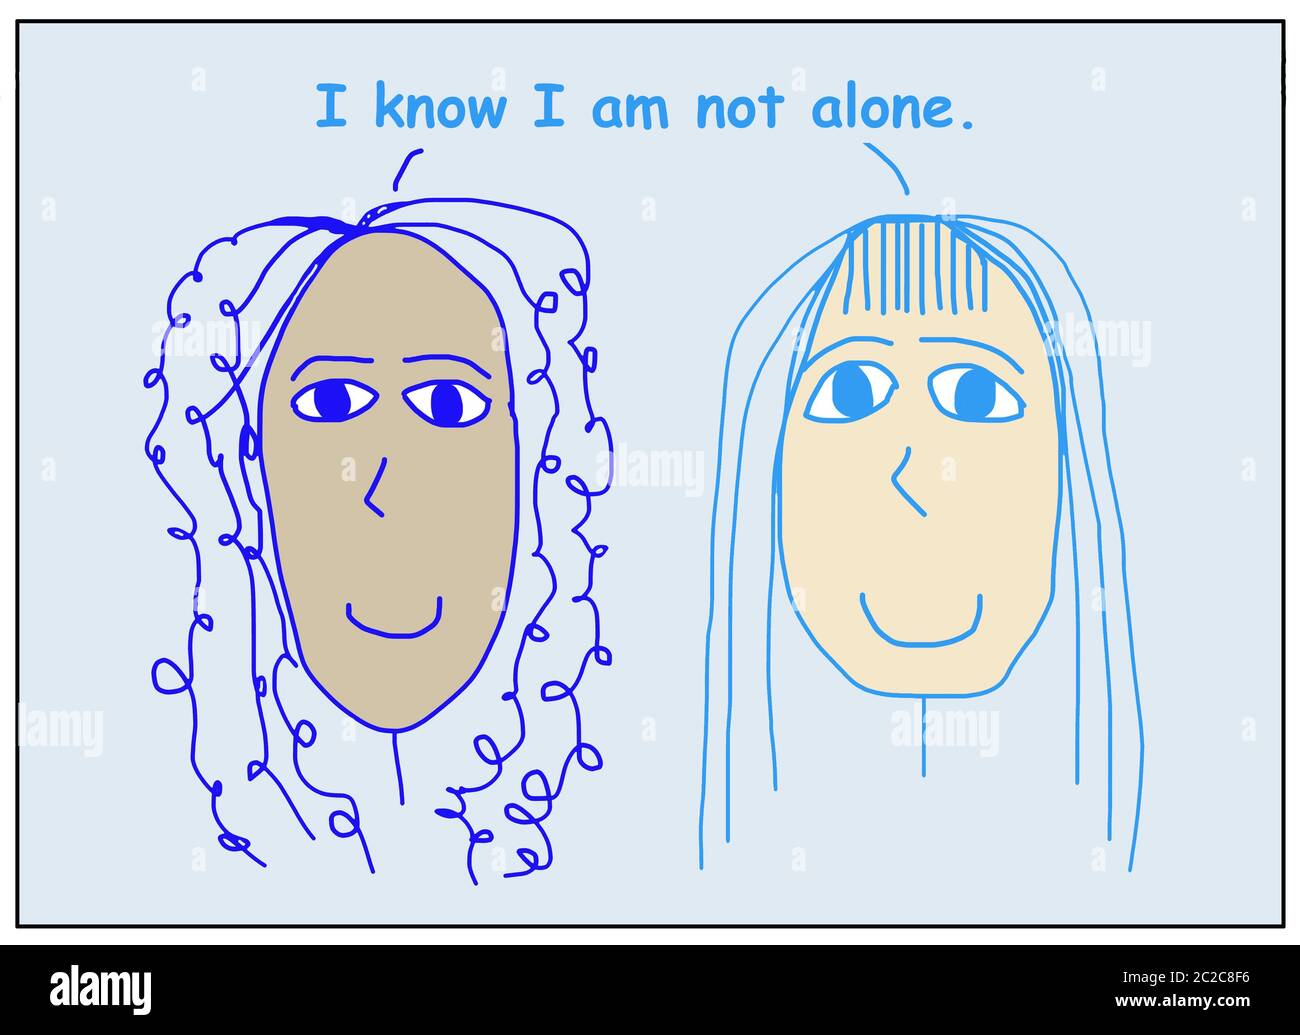 Farb-Cartoon von zwei lächelnden, schönen und ethnisch verschiedenen Frauen besagt, dass ich weiß, ich bin nicht allein. Stockfoto